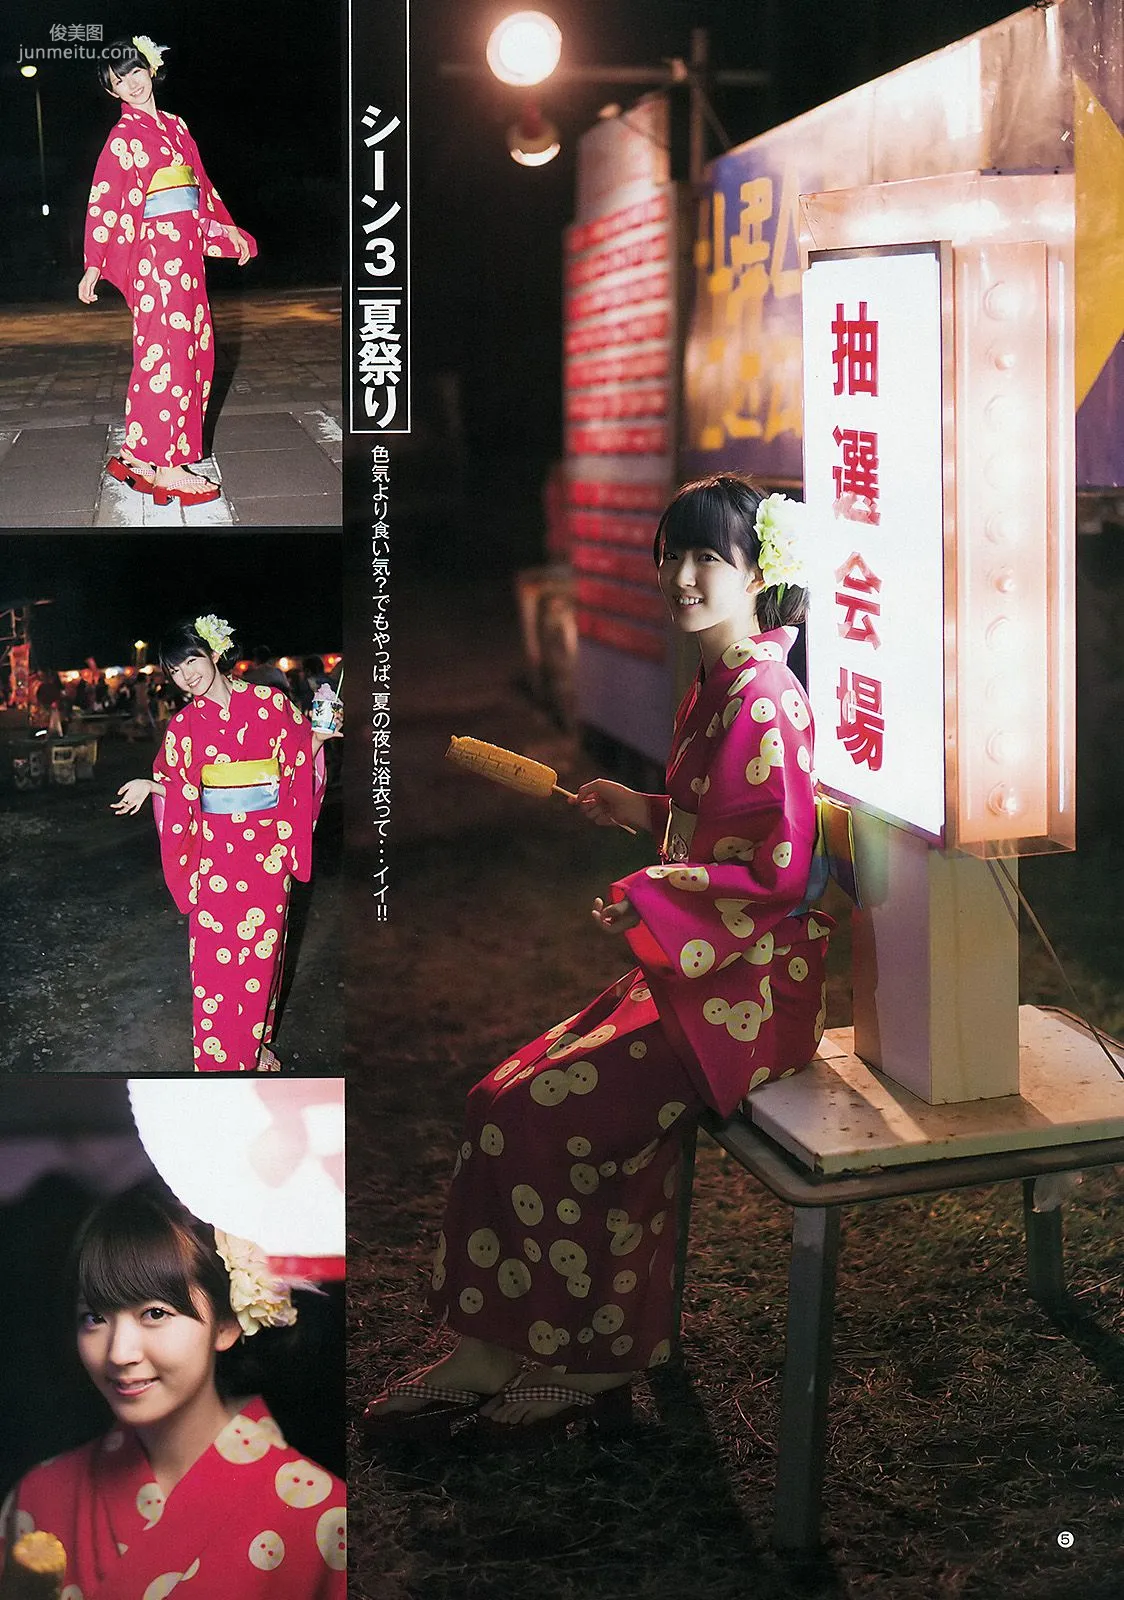 鈴木愛理 モーニング娘。 スマイレージ [Weekly Young Jump] 2012年No.39 写真杂志6